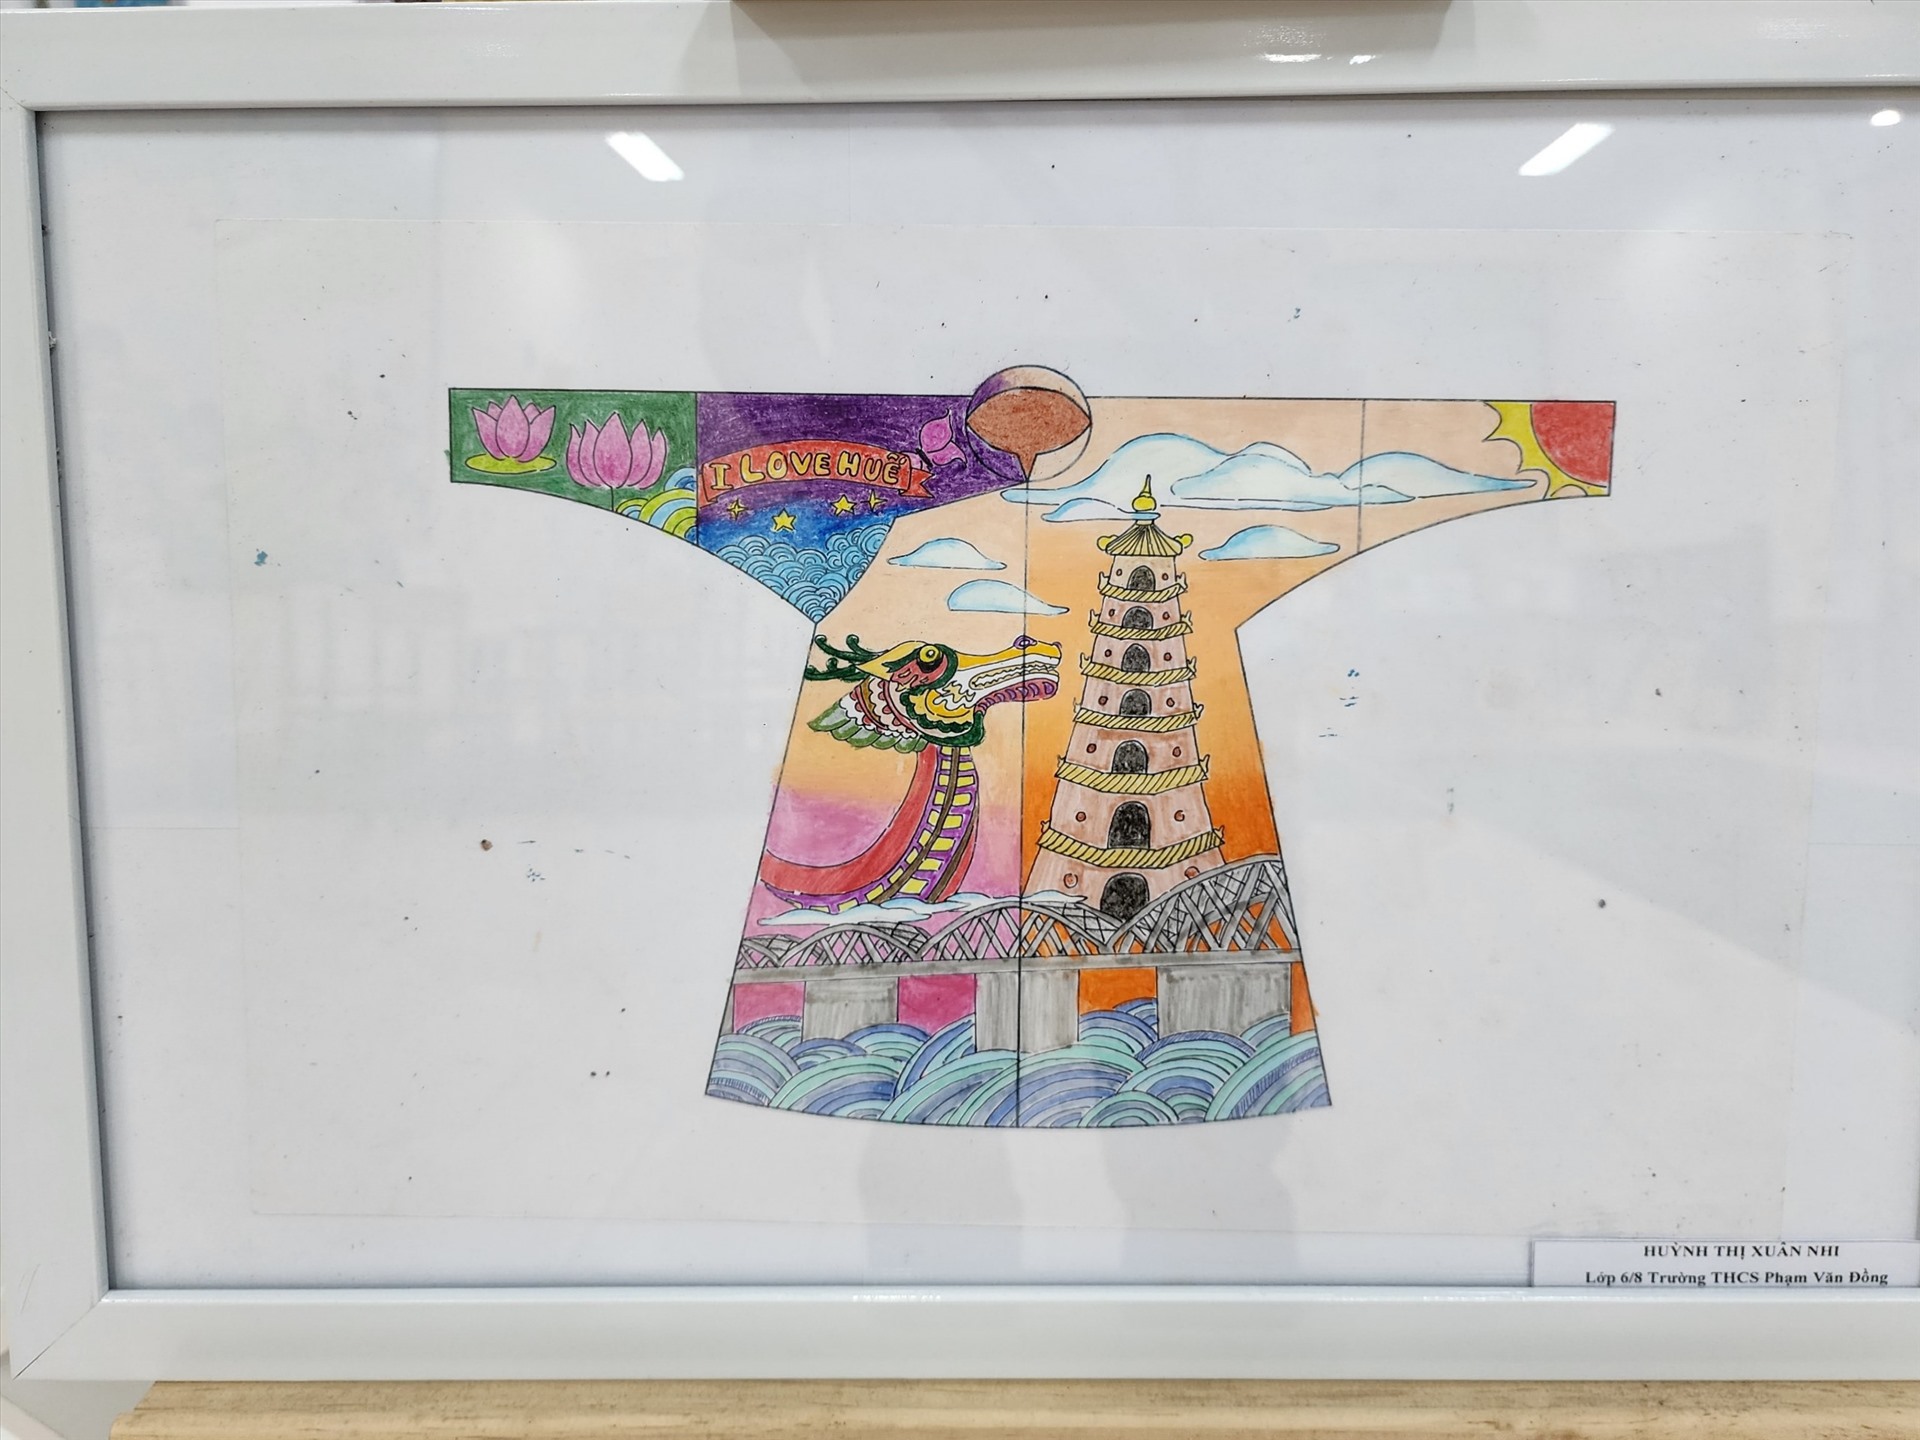 Những biểu tượng của Huế như cầu Trường Tiền, chùa Thiên Mụ, thuyền rồng sông Hương được gói gọn trong tác phẩm của một thí sinh tham gia dự thi.